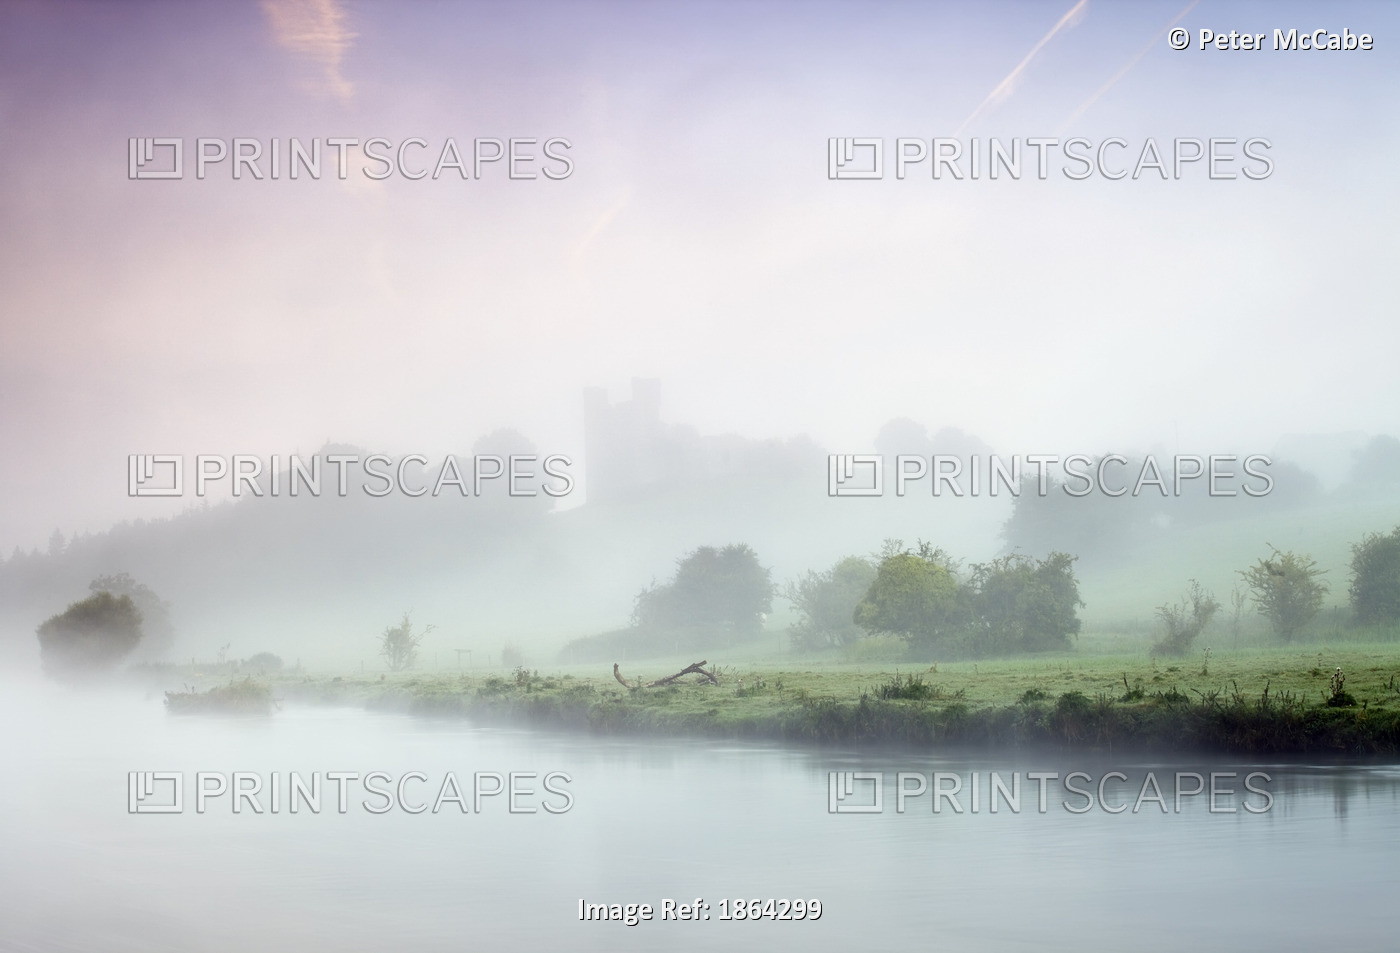 Dunmoe Castle Seen Through The Mist On The River Boyne, County Meath, Ireland